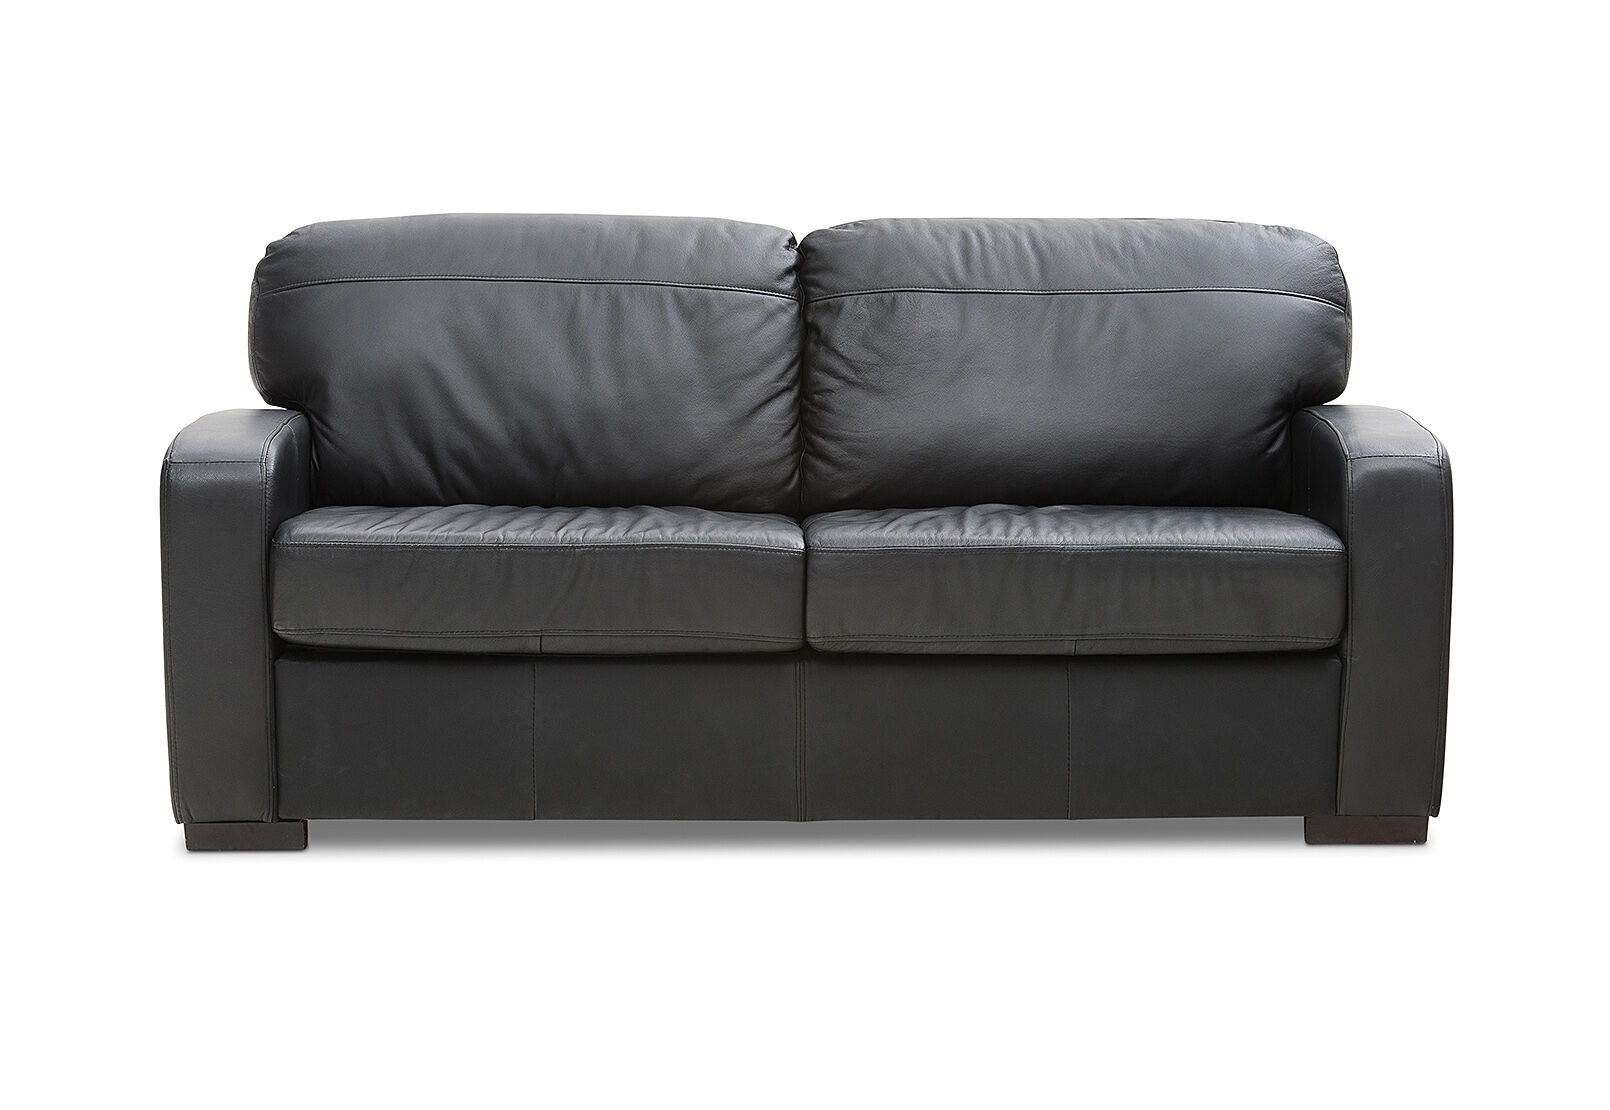 Black Future Leather 2 Seater Sofa Bed, Genuine Leather Sofa Bed Australia